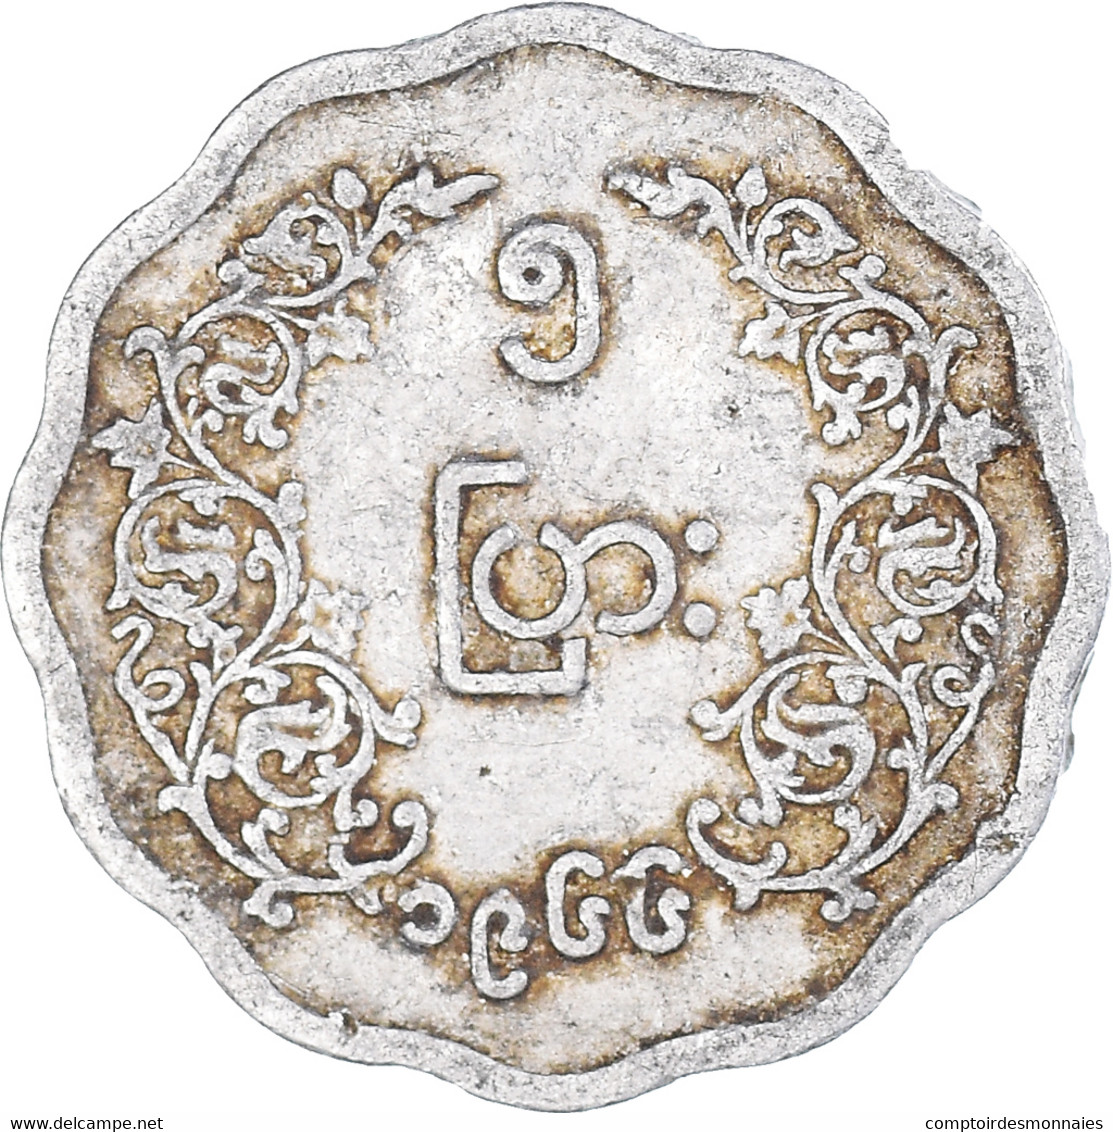 Monnaie, Myanmar, 5 Pyas, 1966 - Myanmar